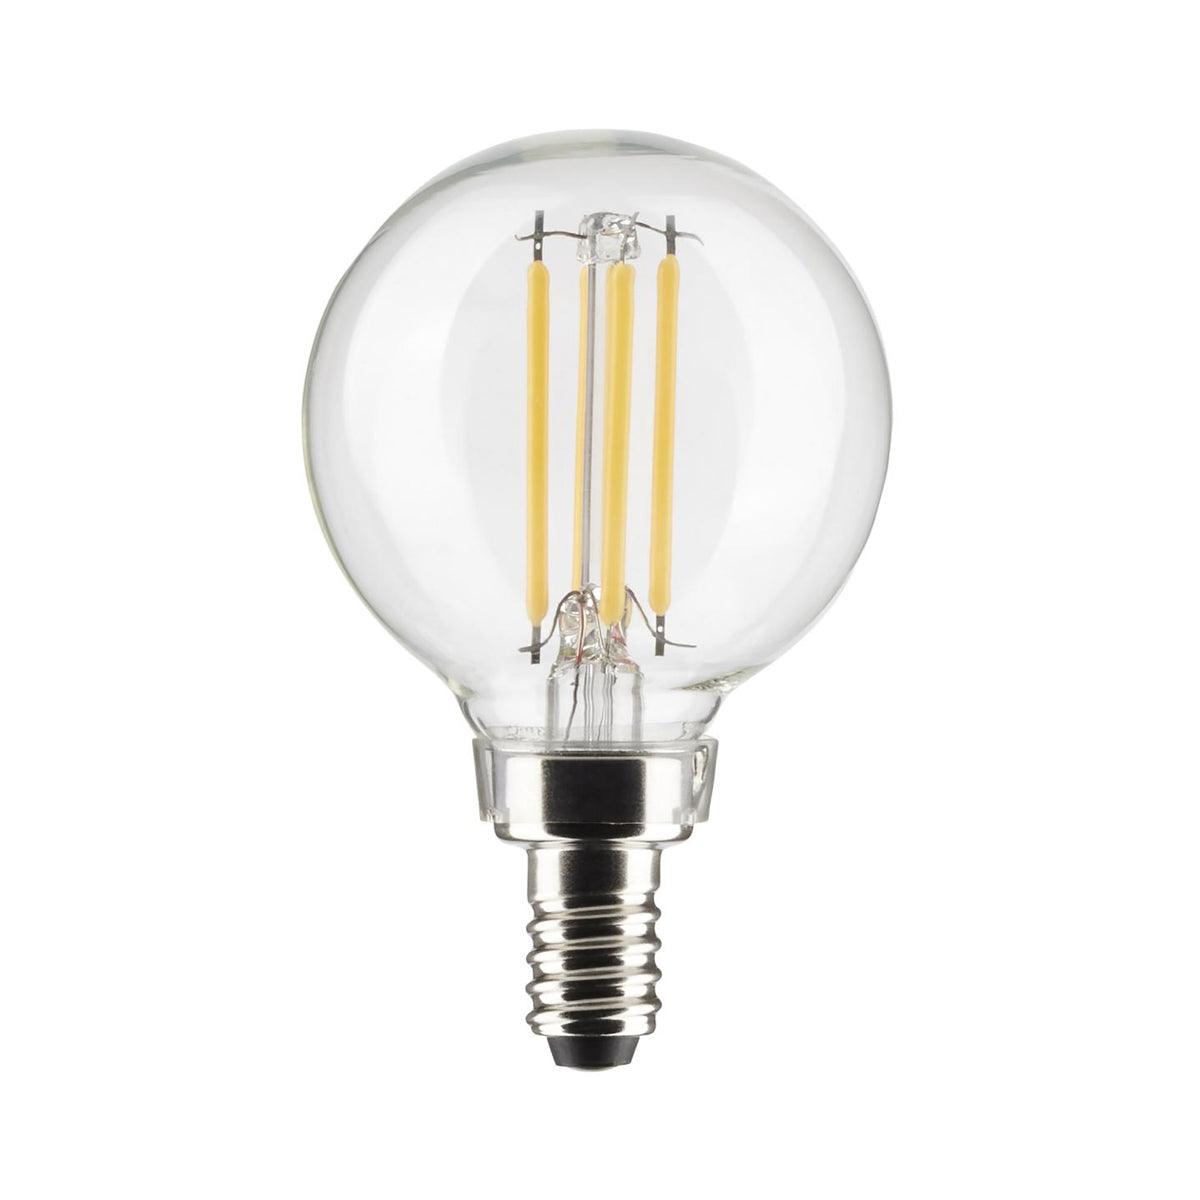 G16.5 LED Globe Bulb, 6 Watt, 500 Lumens, 2700K, E12 Candelabra Base, Clear Finish, Pack Of 2 - Bees Lighting